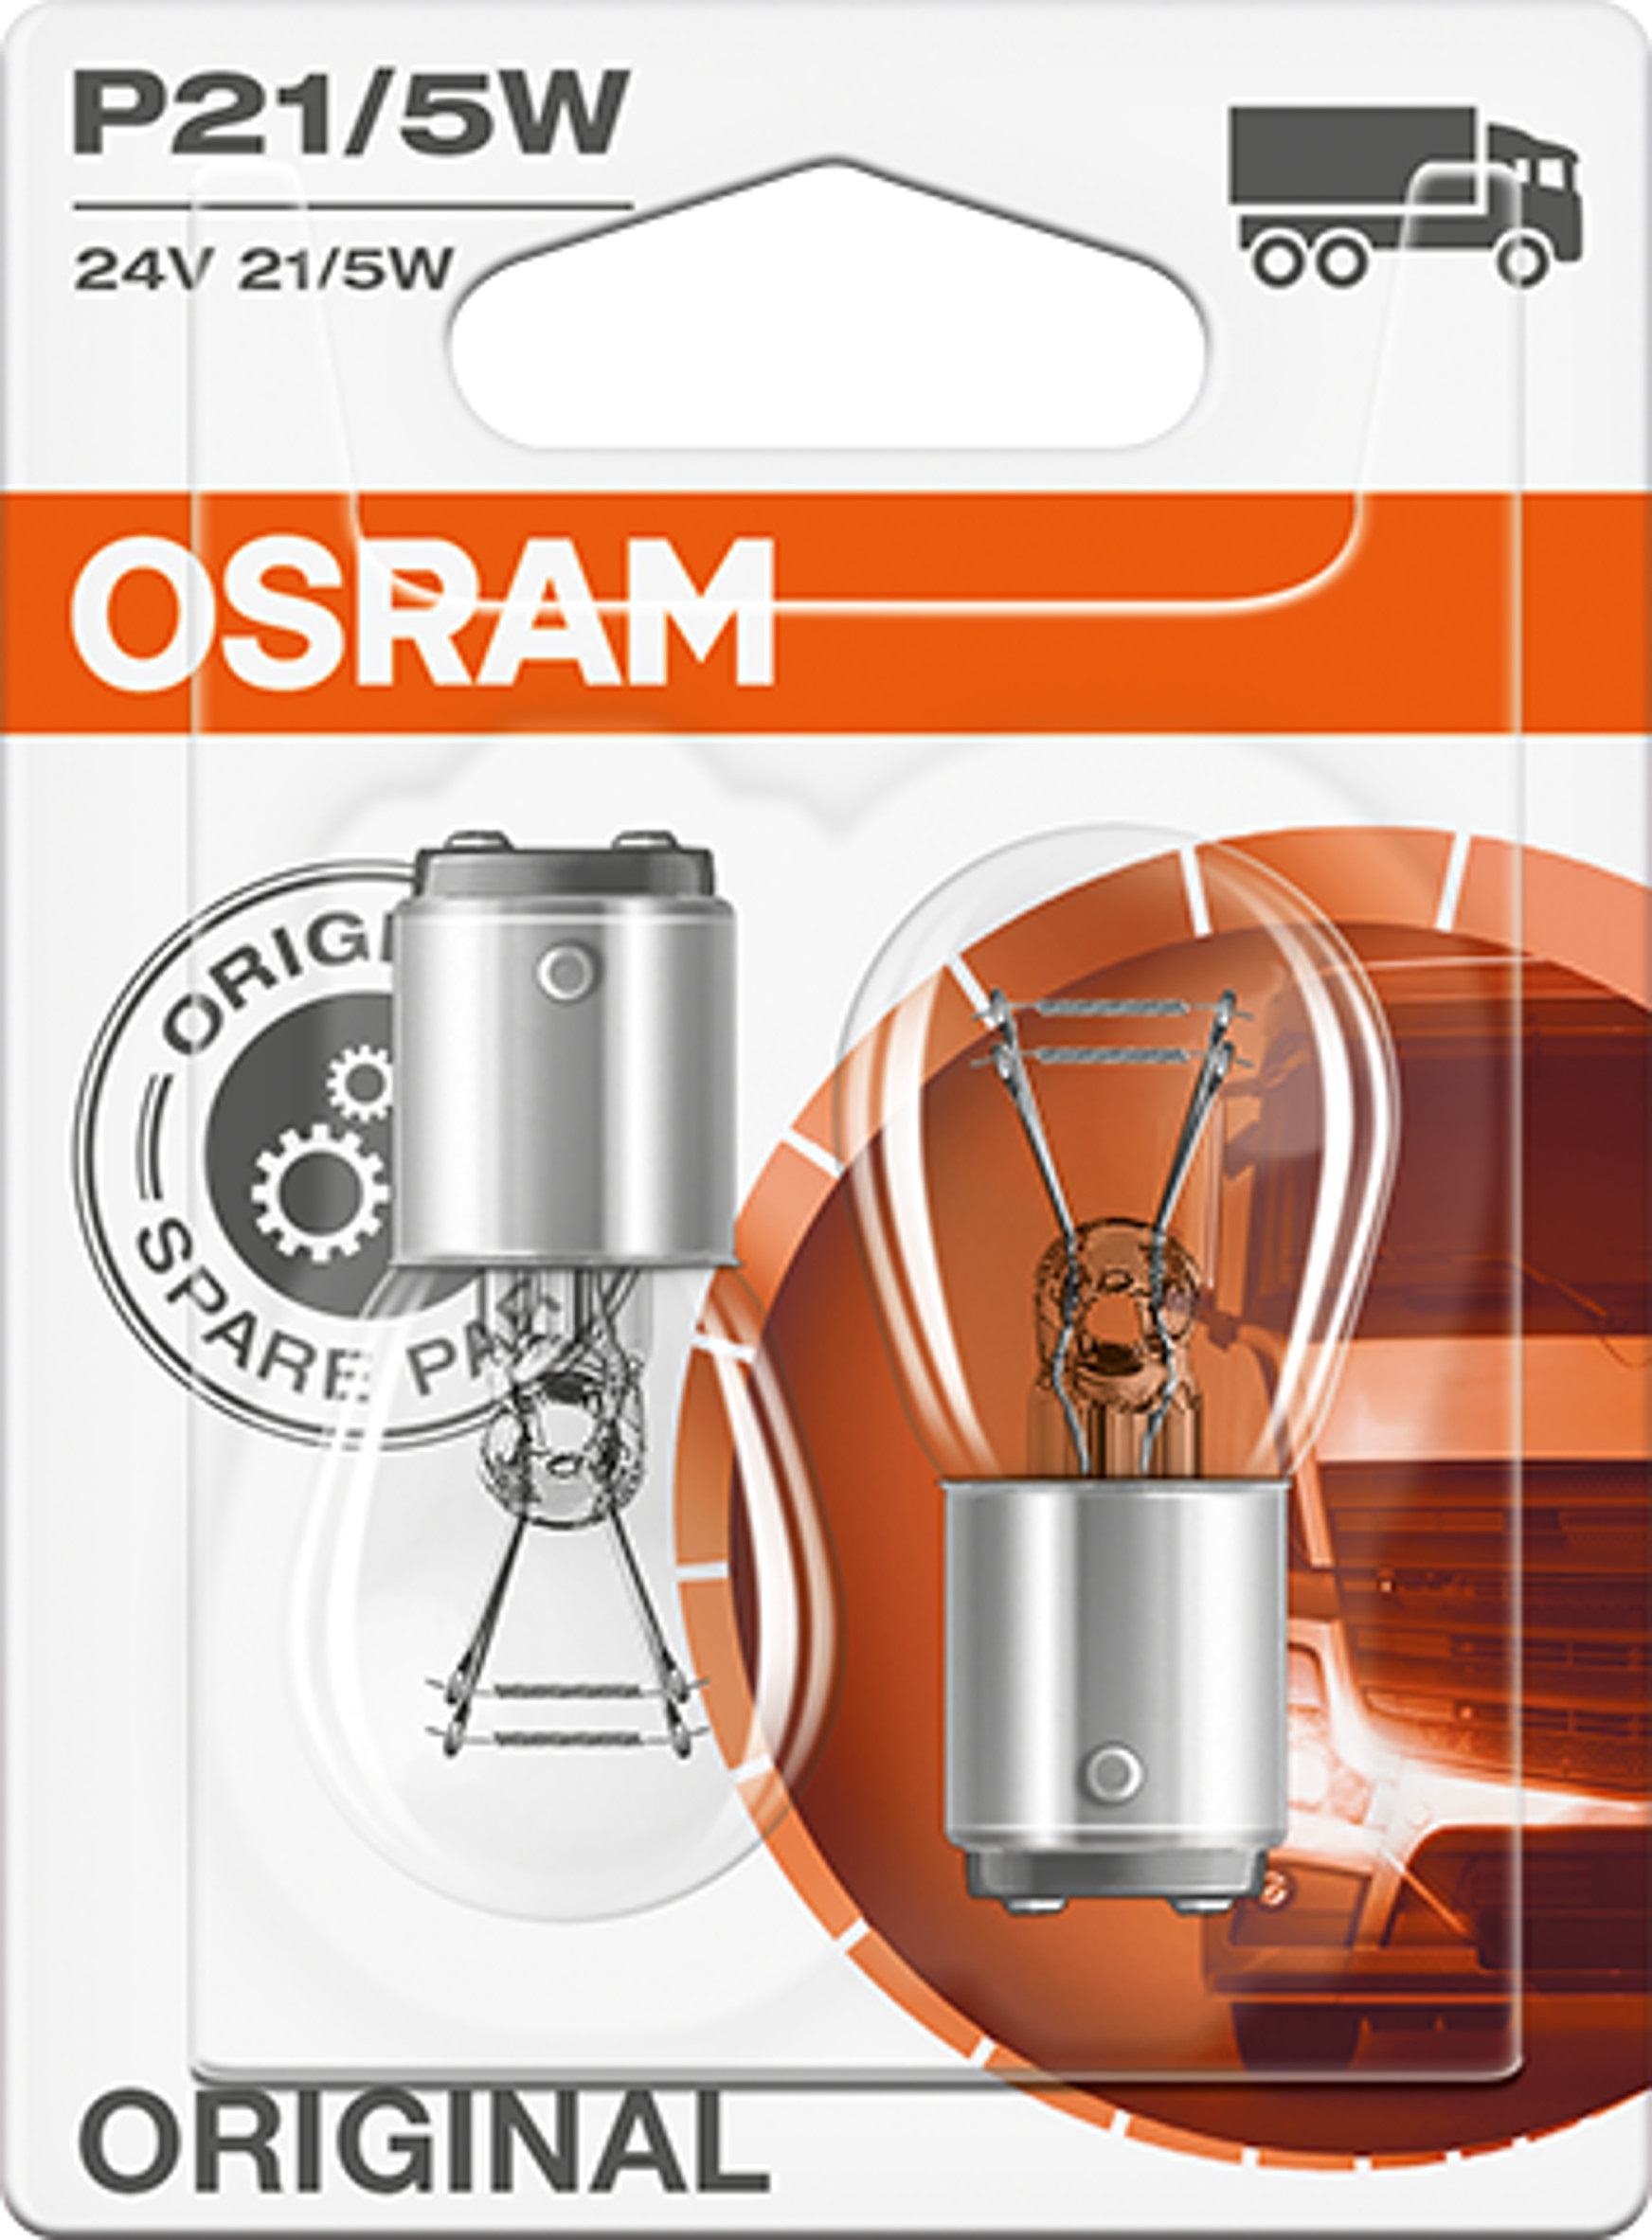 OSRAM Original P21/5W 24 V, 2 Stück von Osram